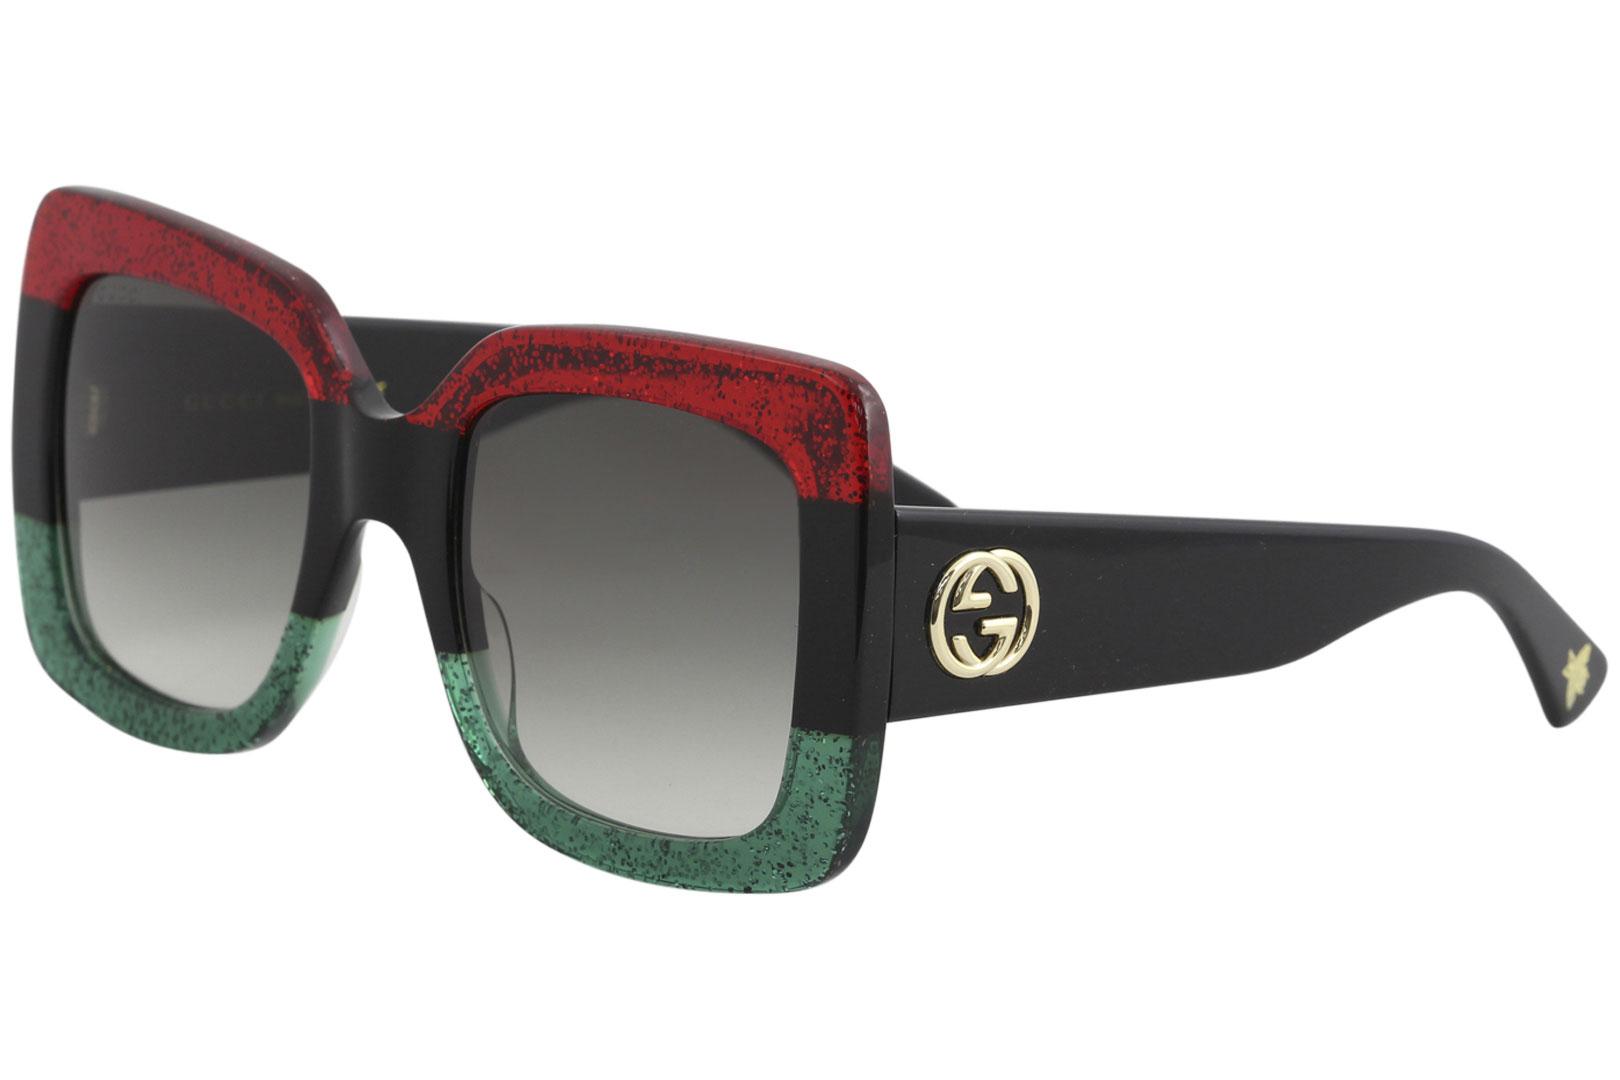 Gucci Women's GG0083S GG/0083/S Square Sunglasses - Red Black Green Glitter/Grey Gradient   001 - Lens 55 Bridge 24 Temple 140mm